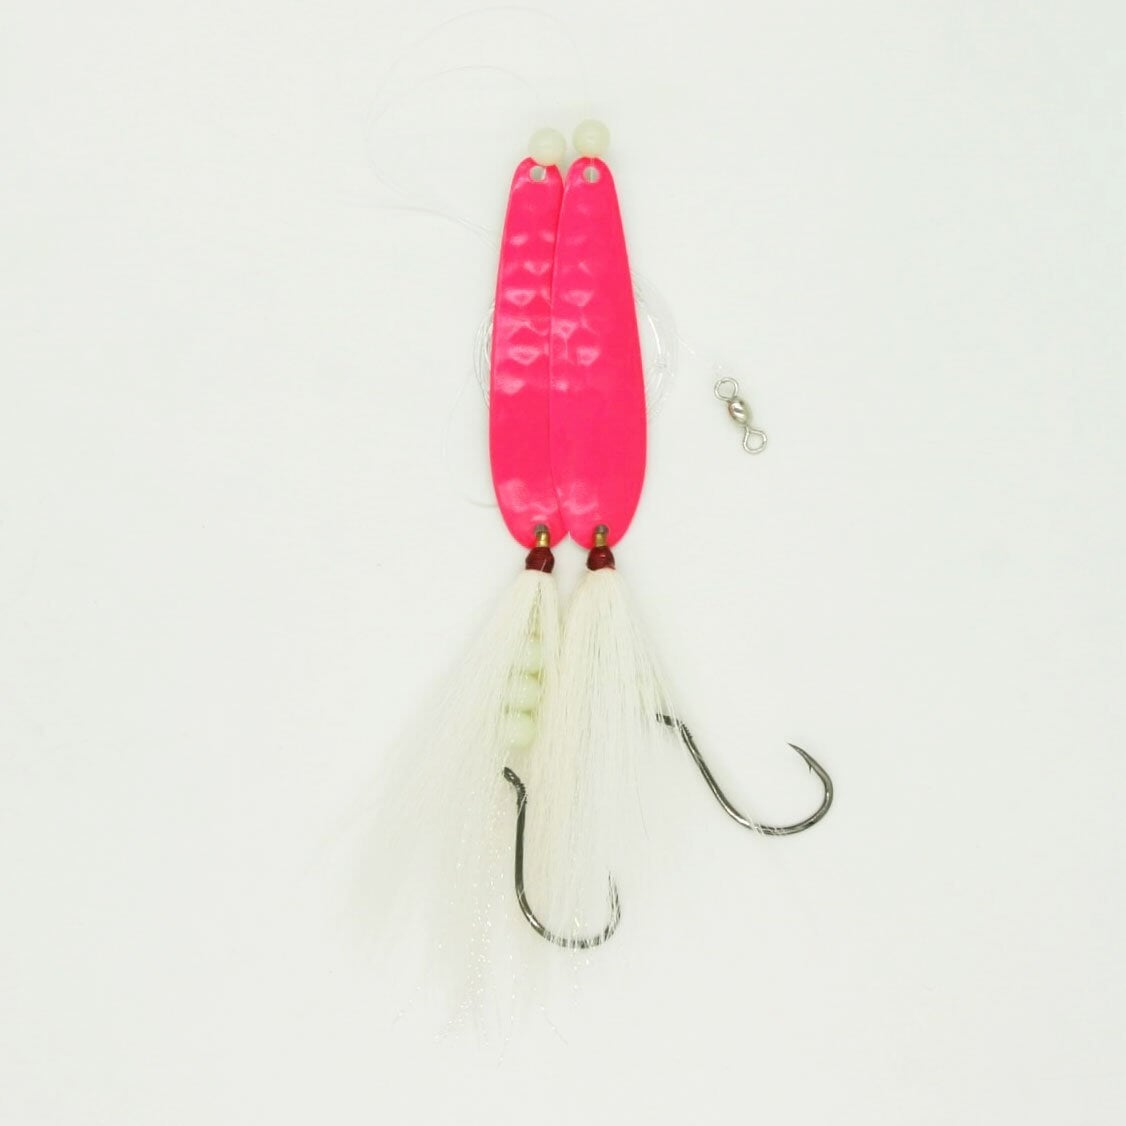 SeaSnare Fluke Pro - Original Fish Finder Sliding Bottom Hook Spoon Ri